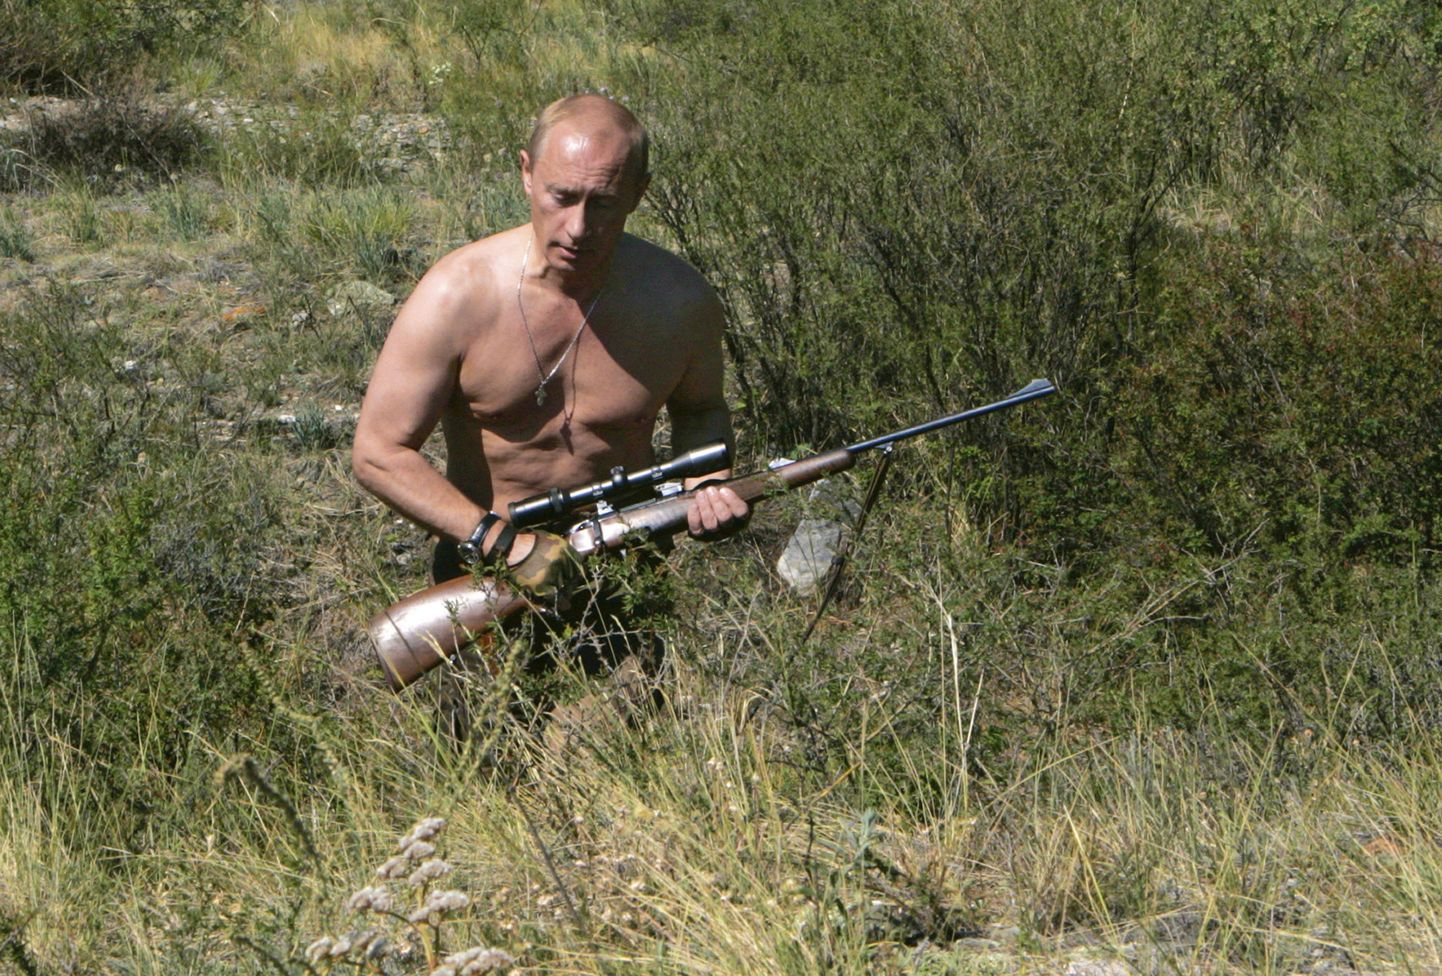 Venemaa peaminister Vladimir Putin jäi seksikaima poliitiku valmisel teisele kohale